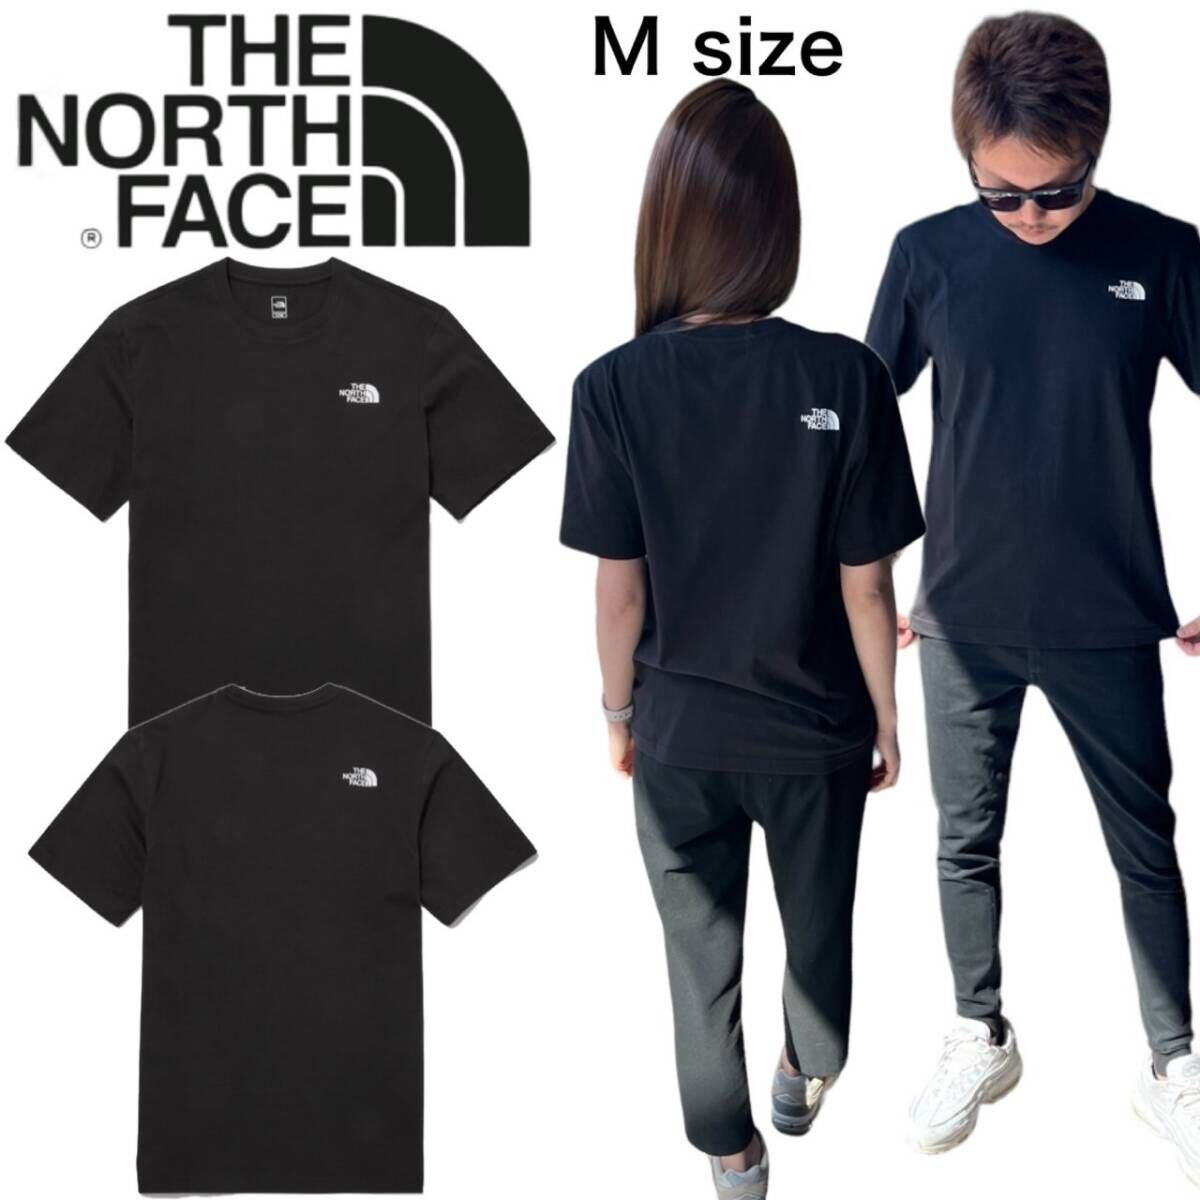 ザ ノースフェイス 半袖 Tシャツ NT7U ブラック Mサイズ コットン素材 クルーネック シンプルロゴ THE NORTH FACE COTTON S/S TEE 新品